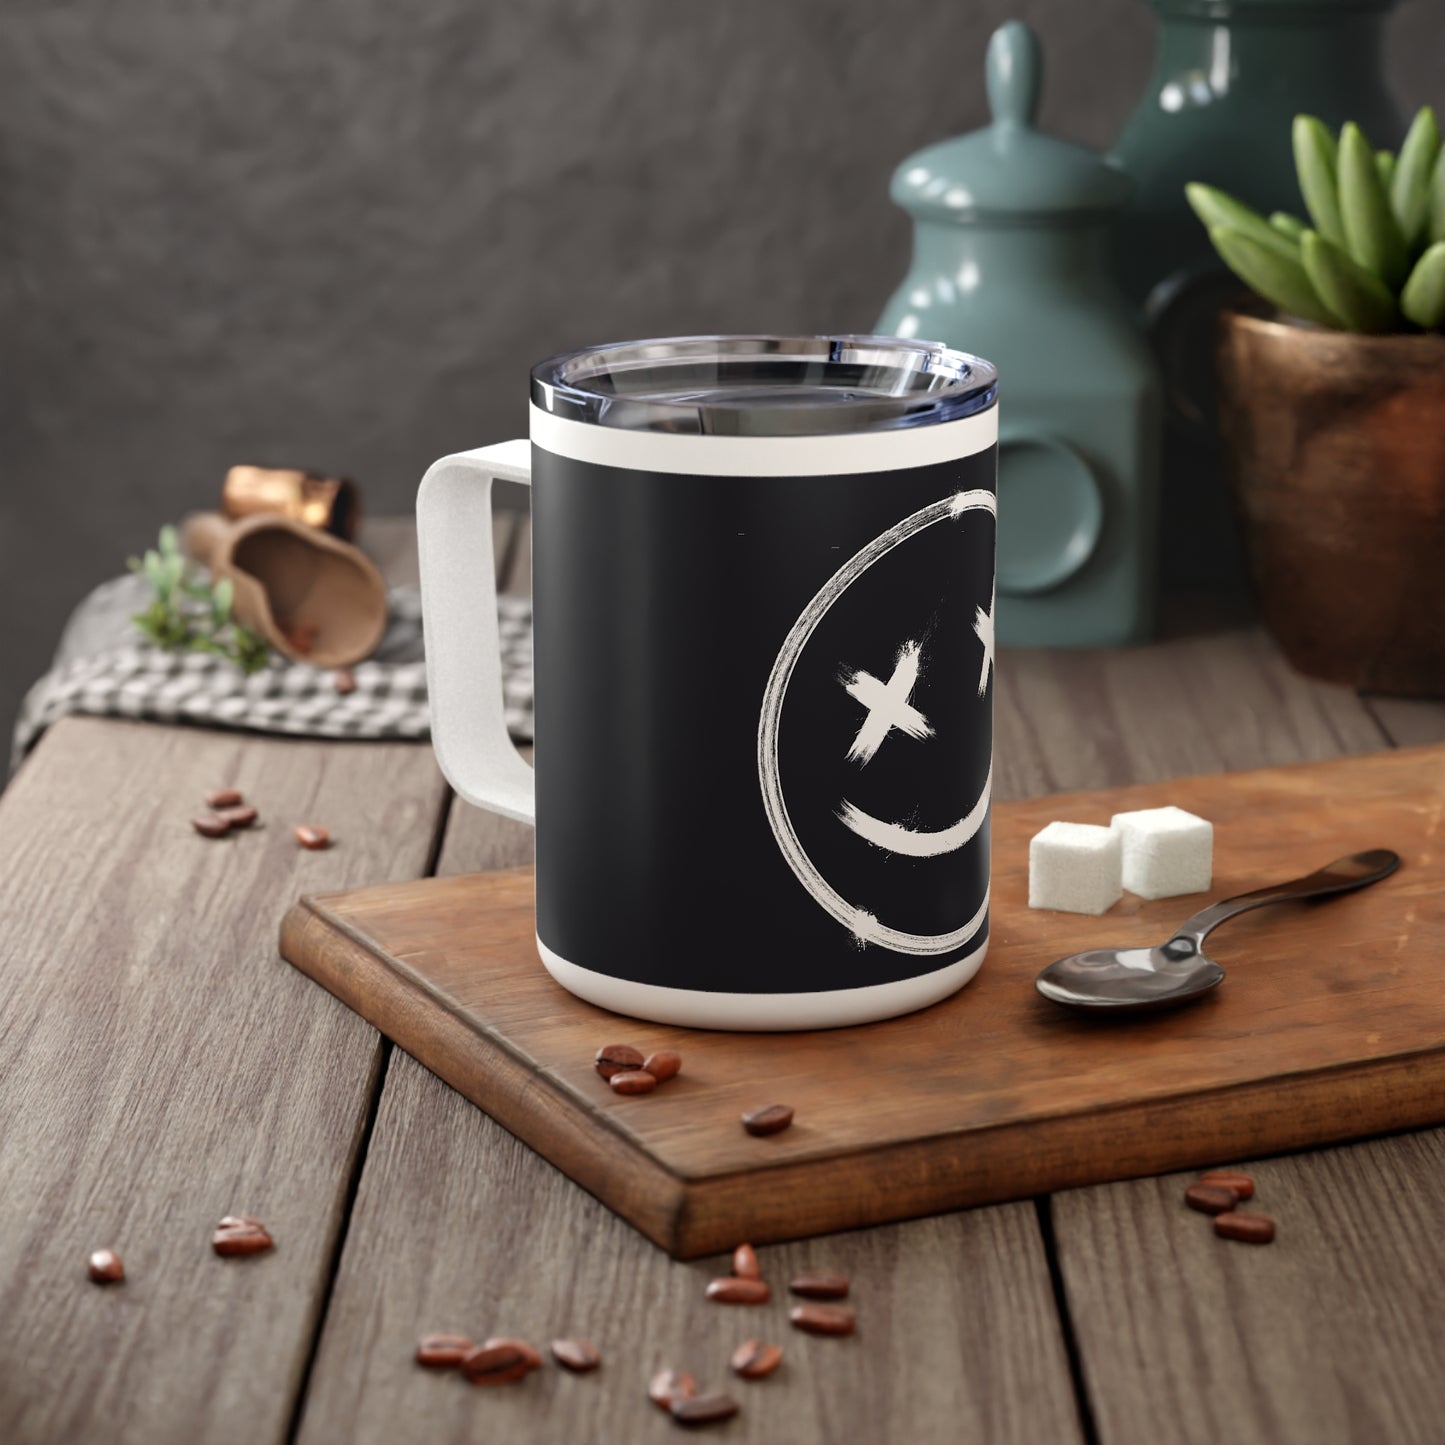 Grunge Smiley | Insulated Coffee Mug, 10oz